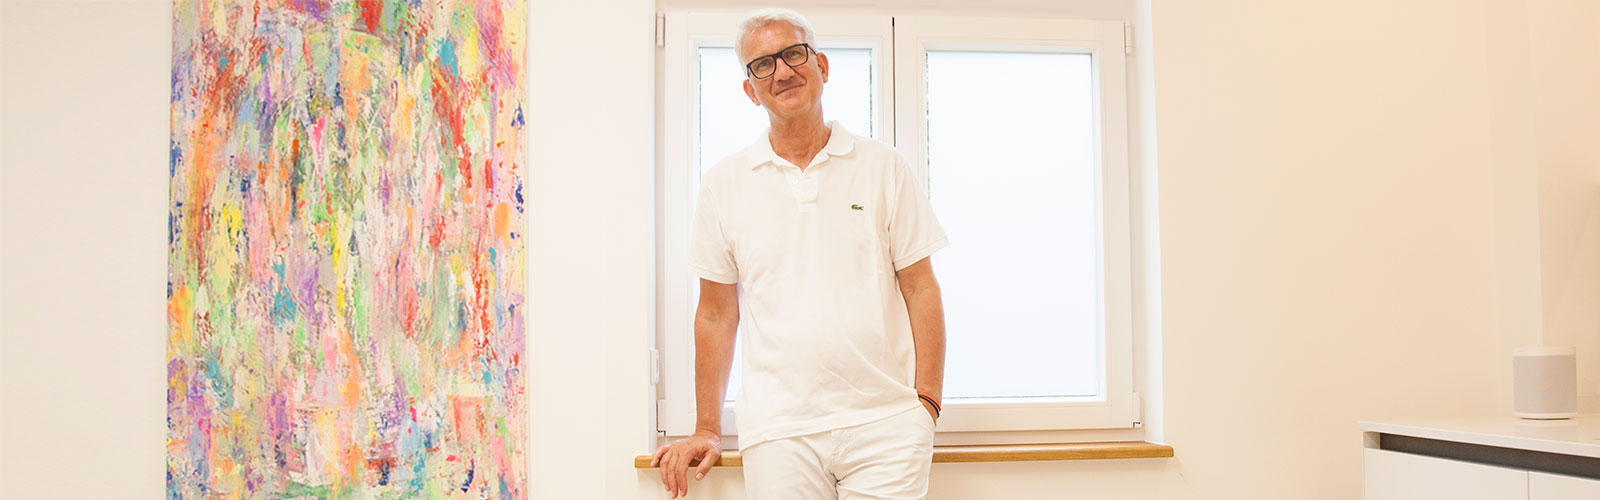 Privatpraxis Dr. Ulrich Wehmeier, Facharzt für Orthopädie in Bad Salzuflen